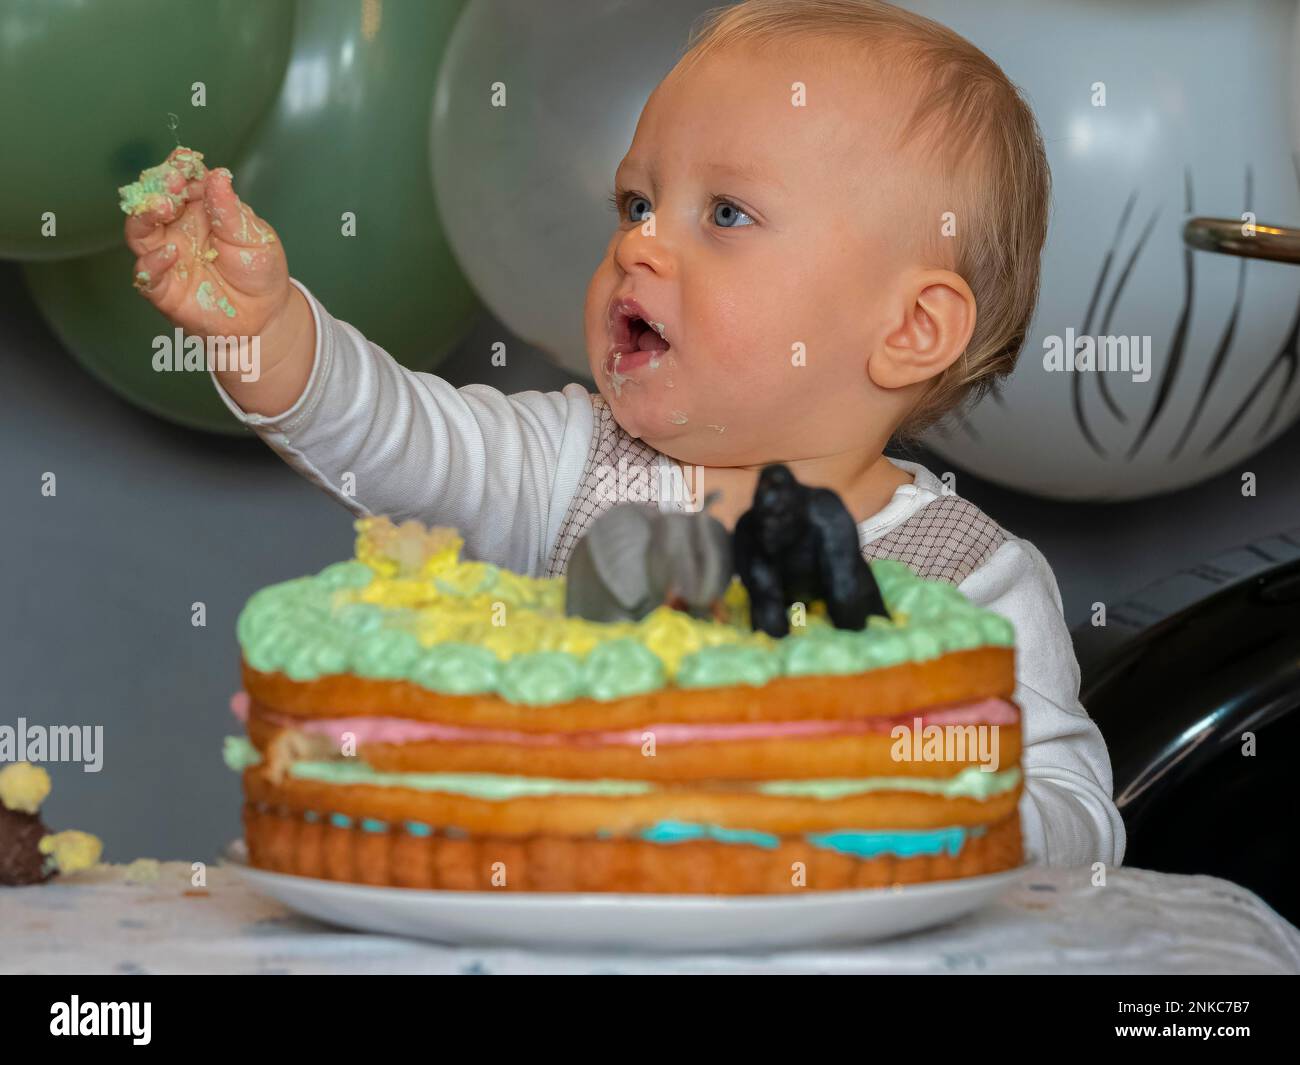 Ein einjähriger Junge sitzt an seinem ersten Geburtstag vor seinem Geburtstagskuchen und versucht zu sehen, ob er gut schmeckt Stockfoto